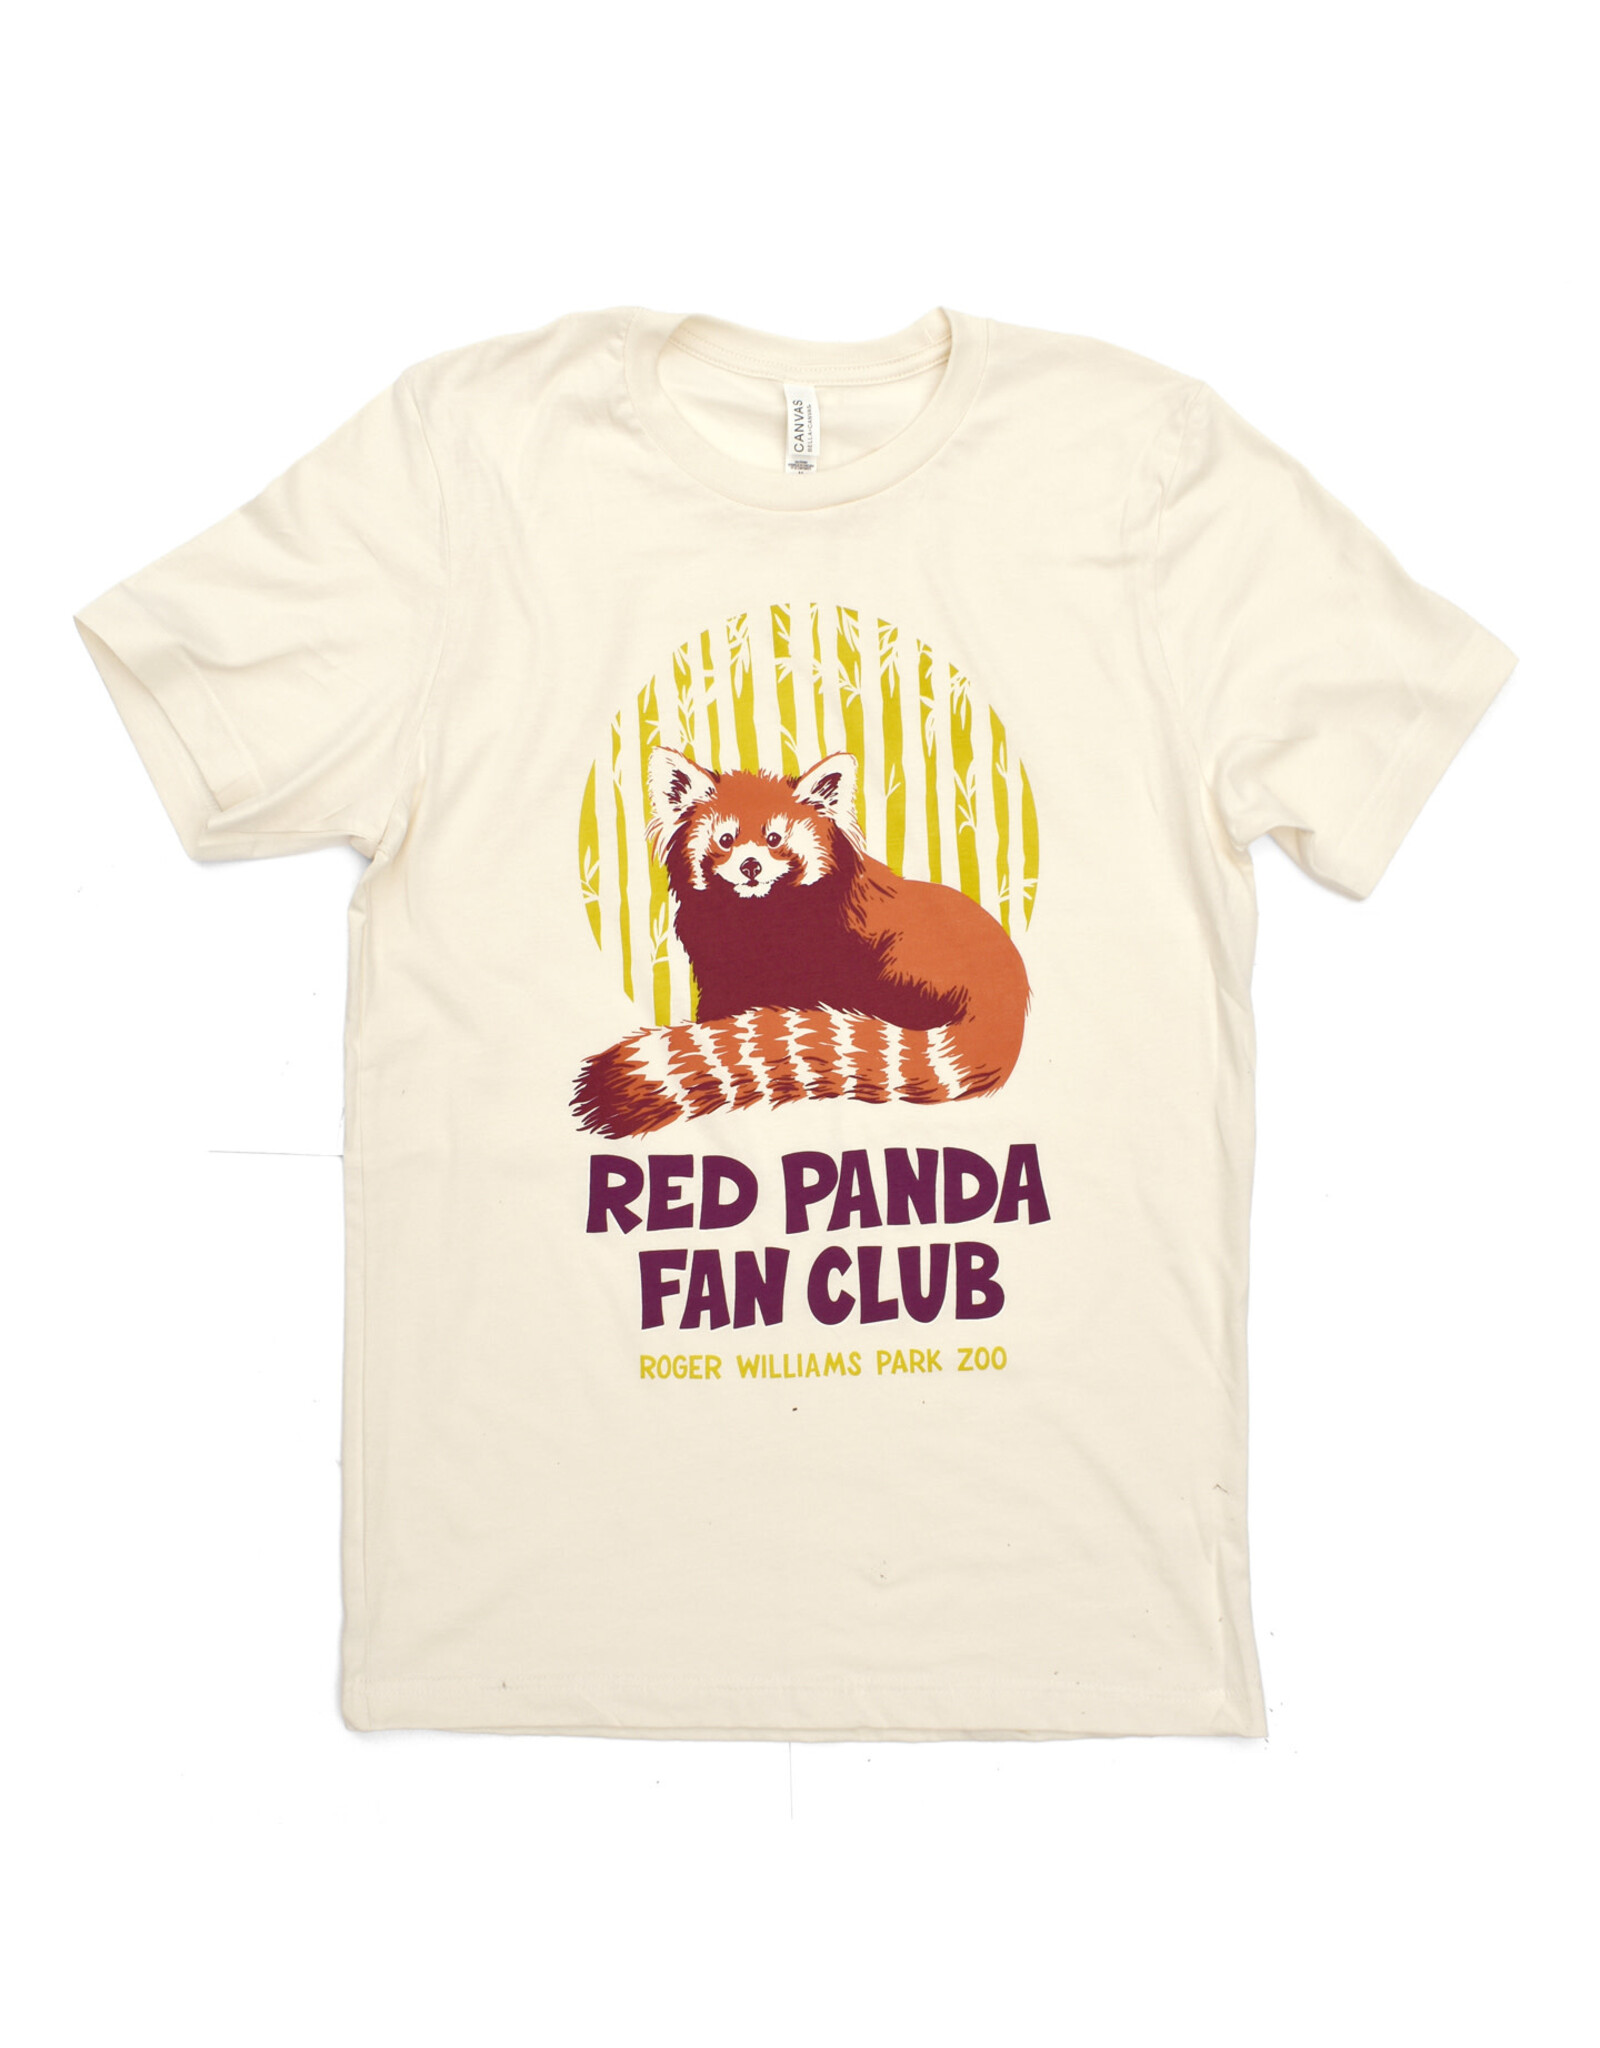 Red Panda Fan Club Shirt